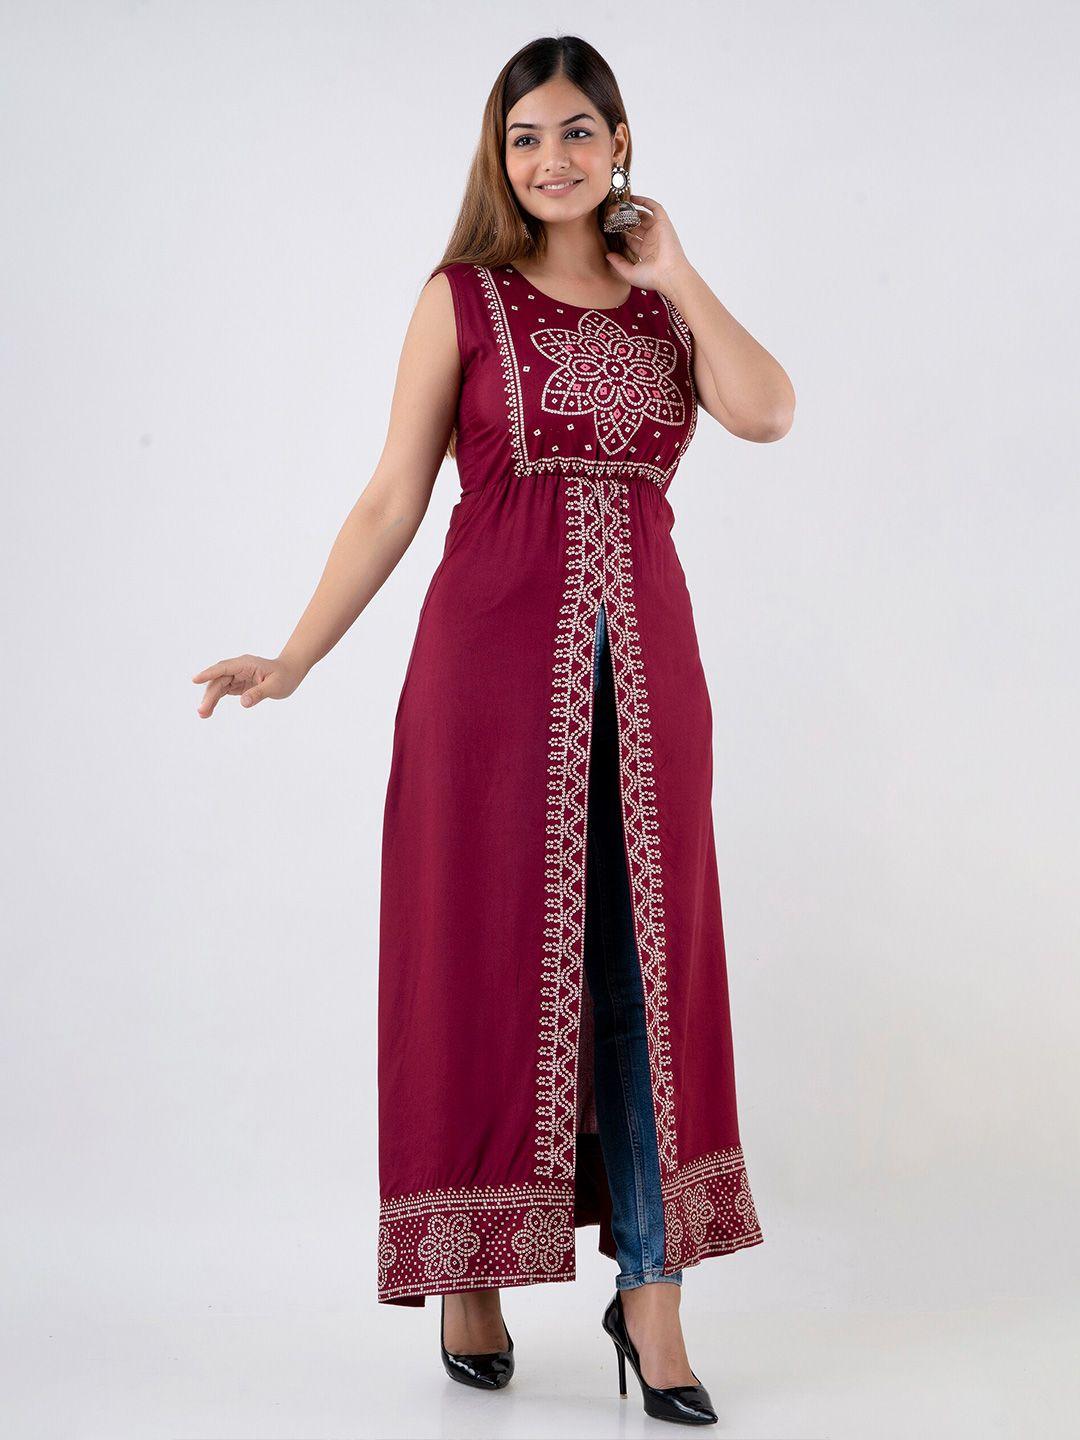 dressar maroon ethnic motifs maxi maxi dress